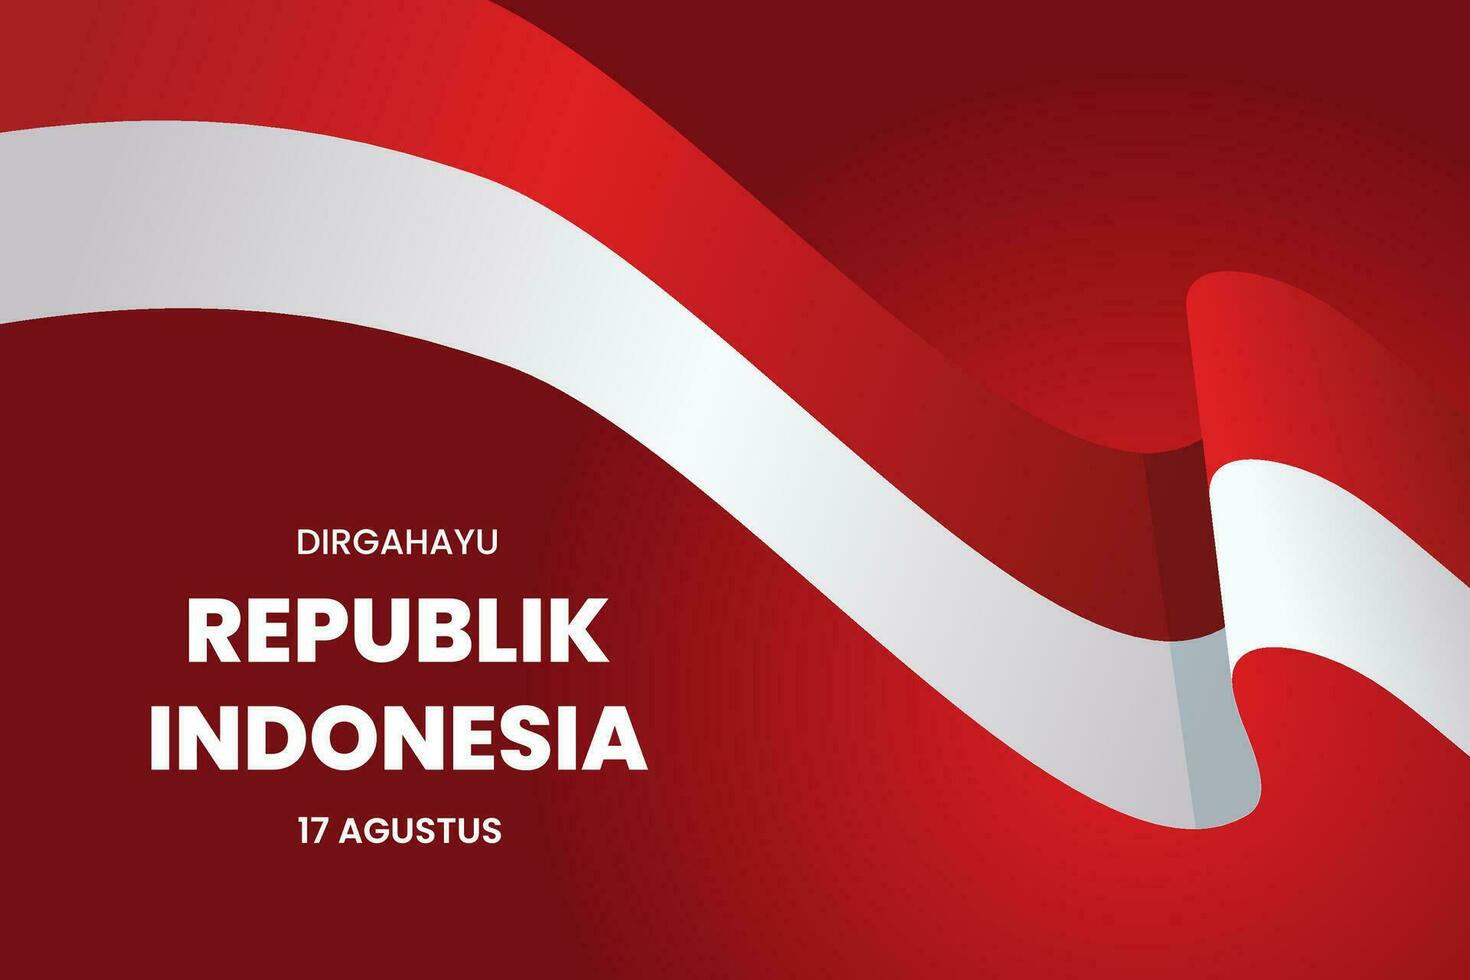 contento indonesiano indipendenza giorno, dirgahayu republik Indonesia, 17 agosto 1945. senso lungo vivere Indonesia, vettore illustrazione.